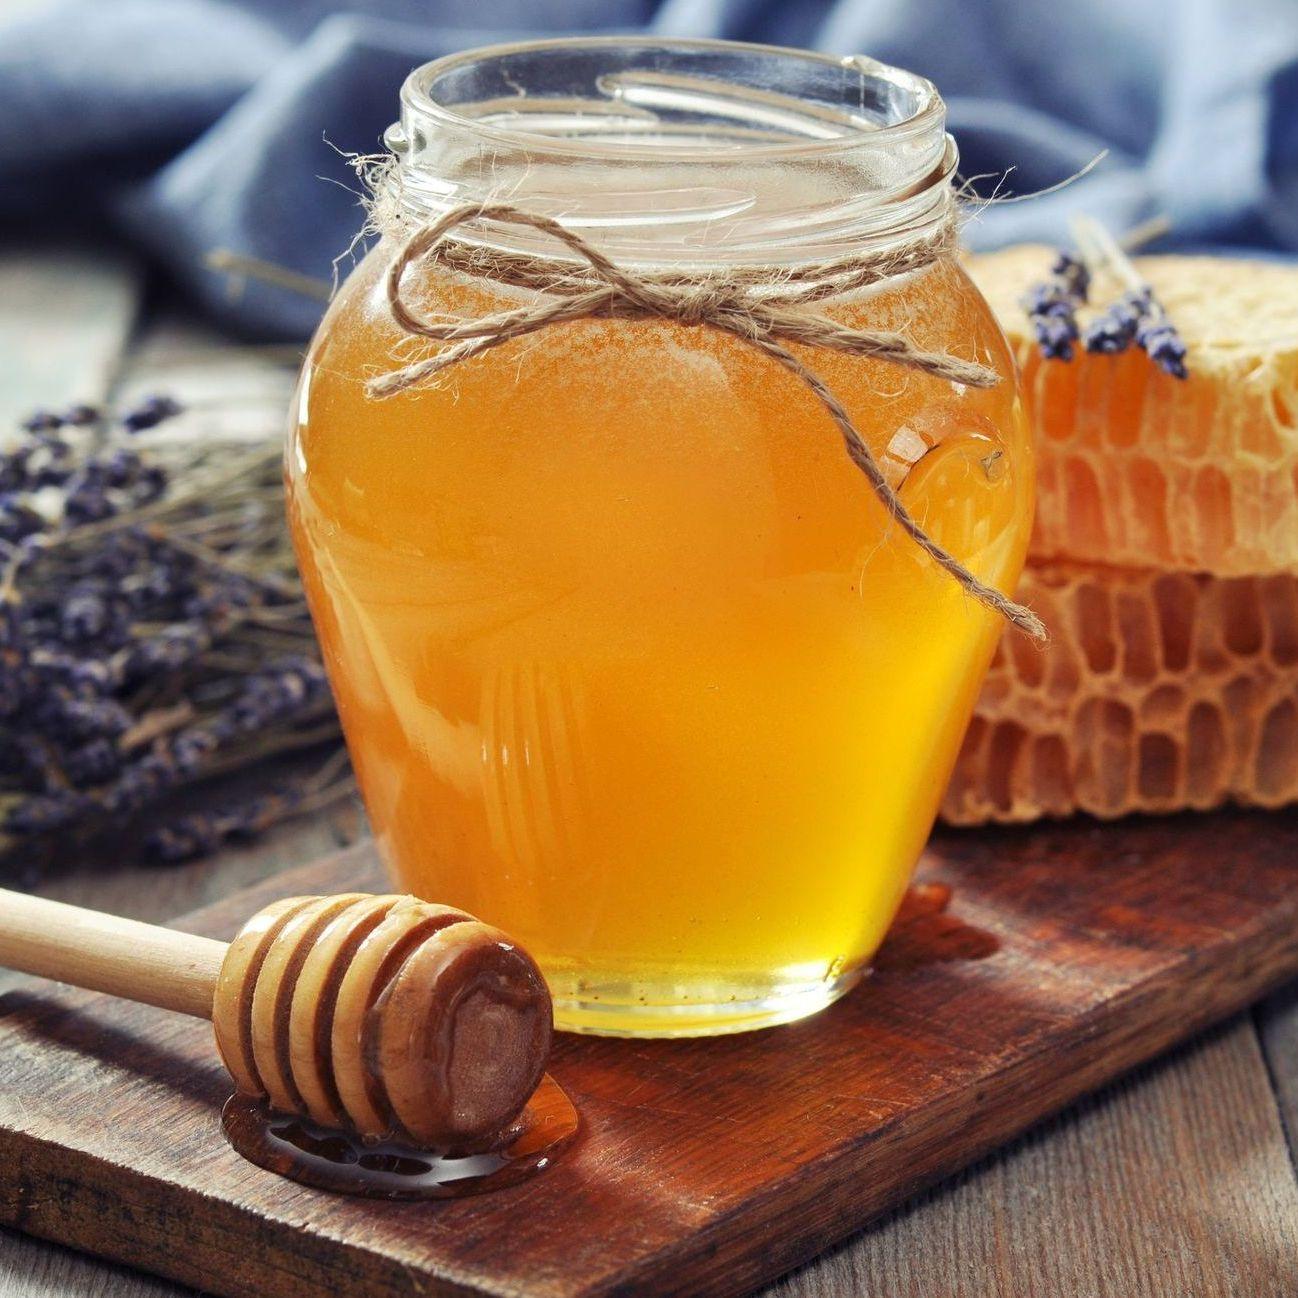 Bez pokusa: Provjerite jedete li pravi med